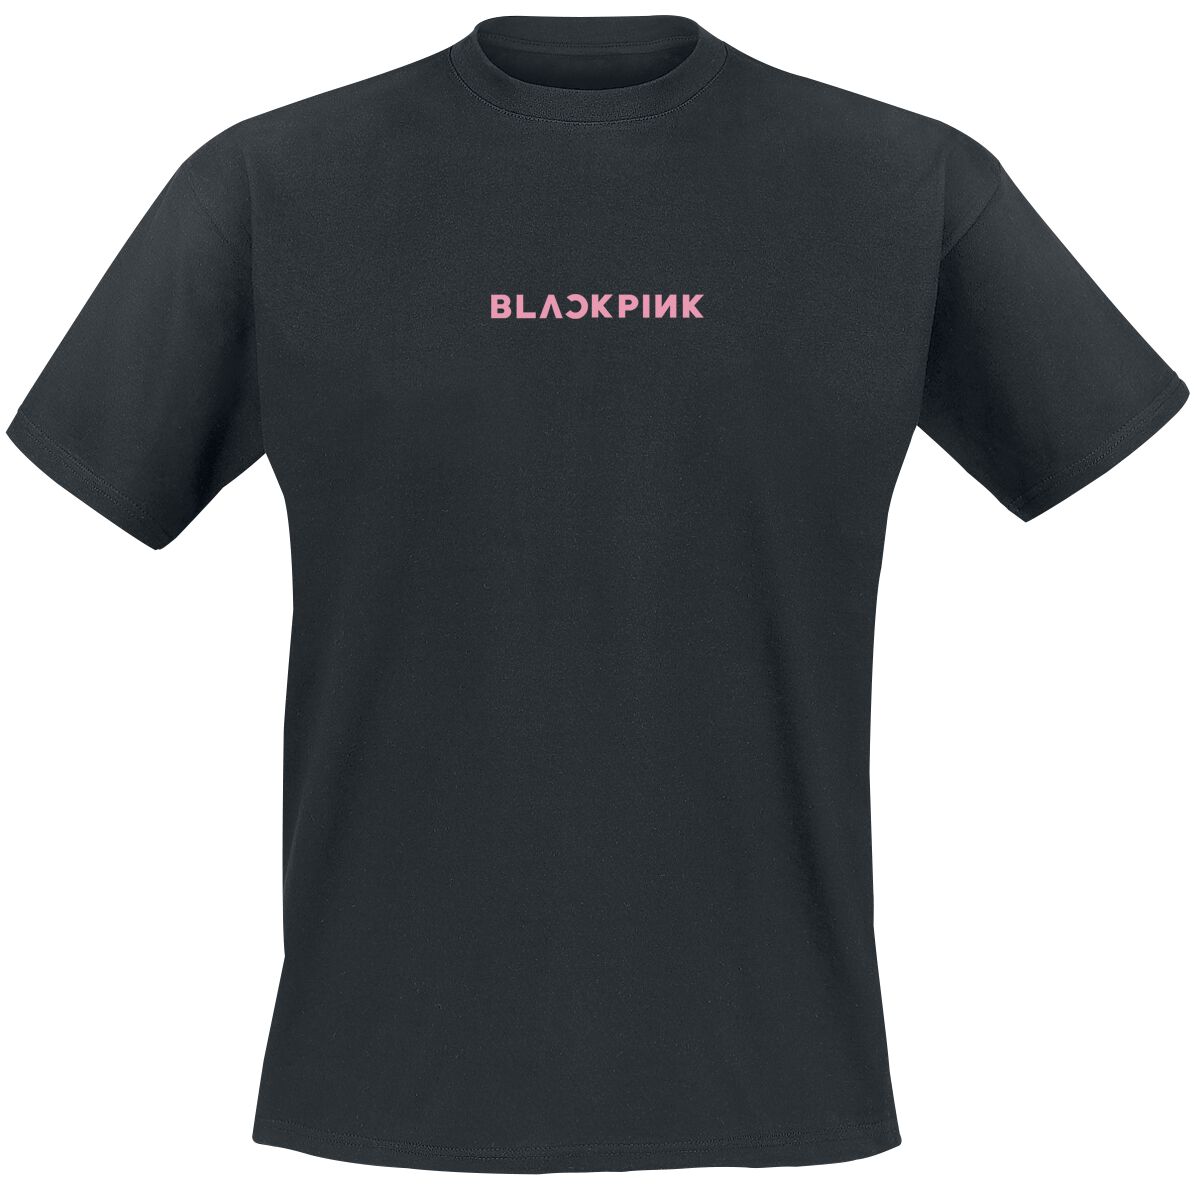 Blackpink T-Shirt - Taste That Pink Venom - L bis XL - für Männer - Größe XL - schwarz  - Lizenziertes Merchandise!